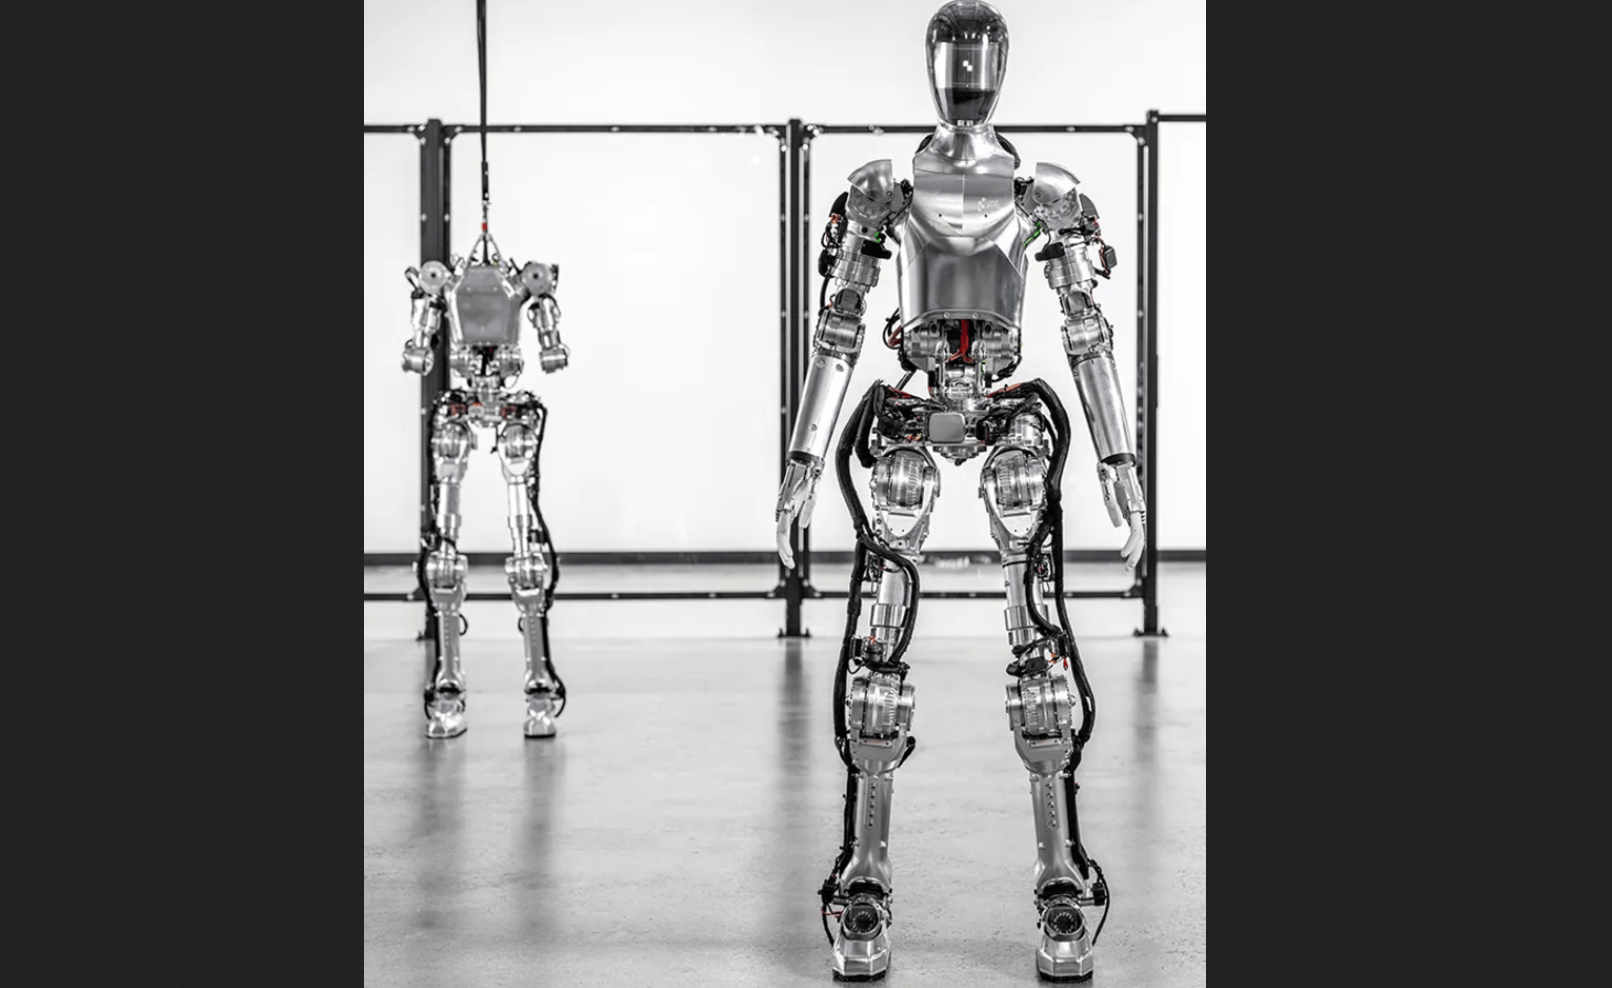 Näinkö Skynet alkaa? Bezos, Nvidia liittyy OpenAI:n mukaan rahoittamaan Humanoid Robotics -yritystä